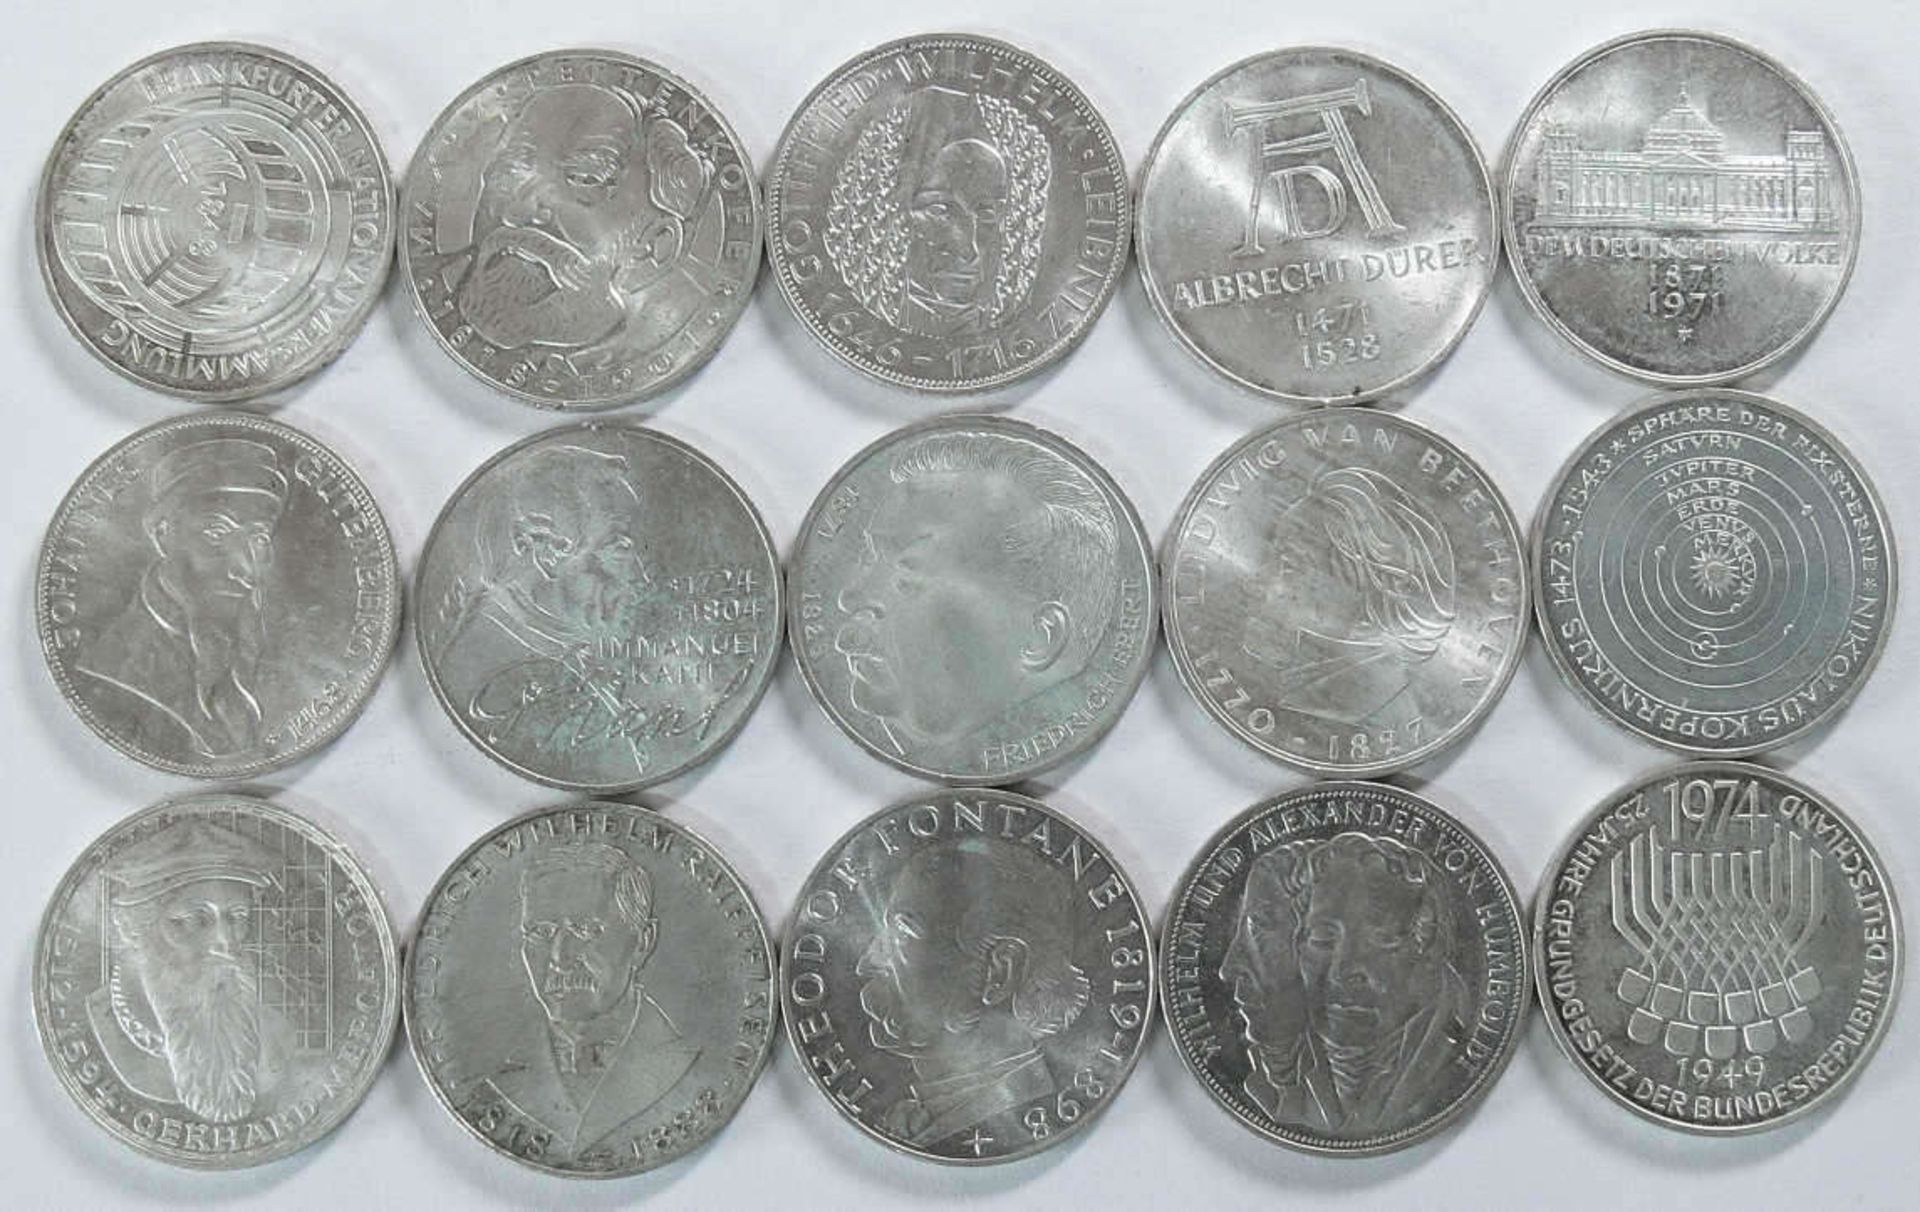 Deutschland 1966-75, Lot 5.- DM - Silbermünzen. Erhaltung: ss-vz. Bitte besichtigen.